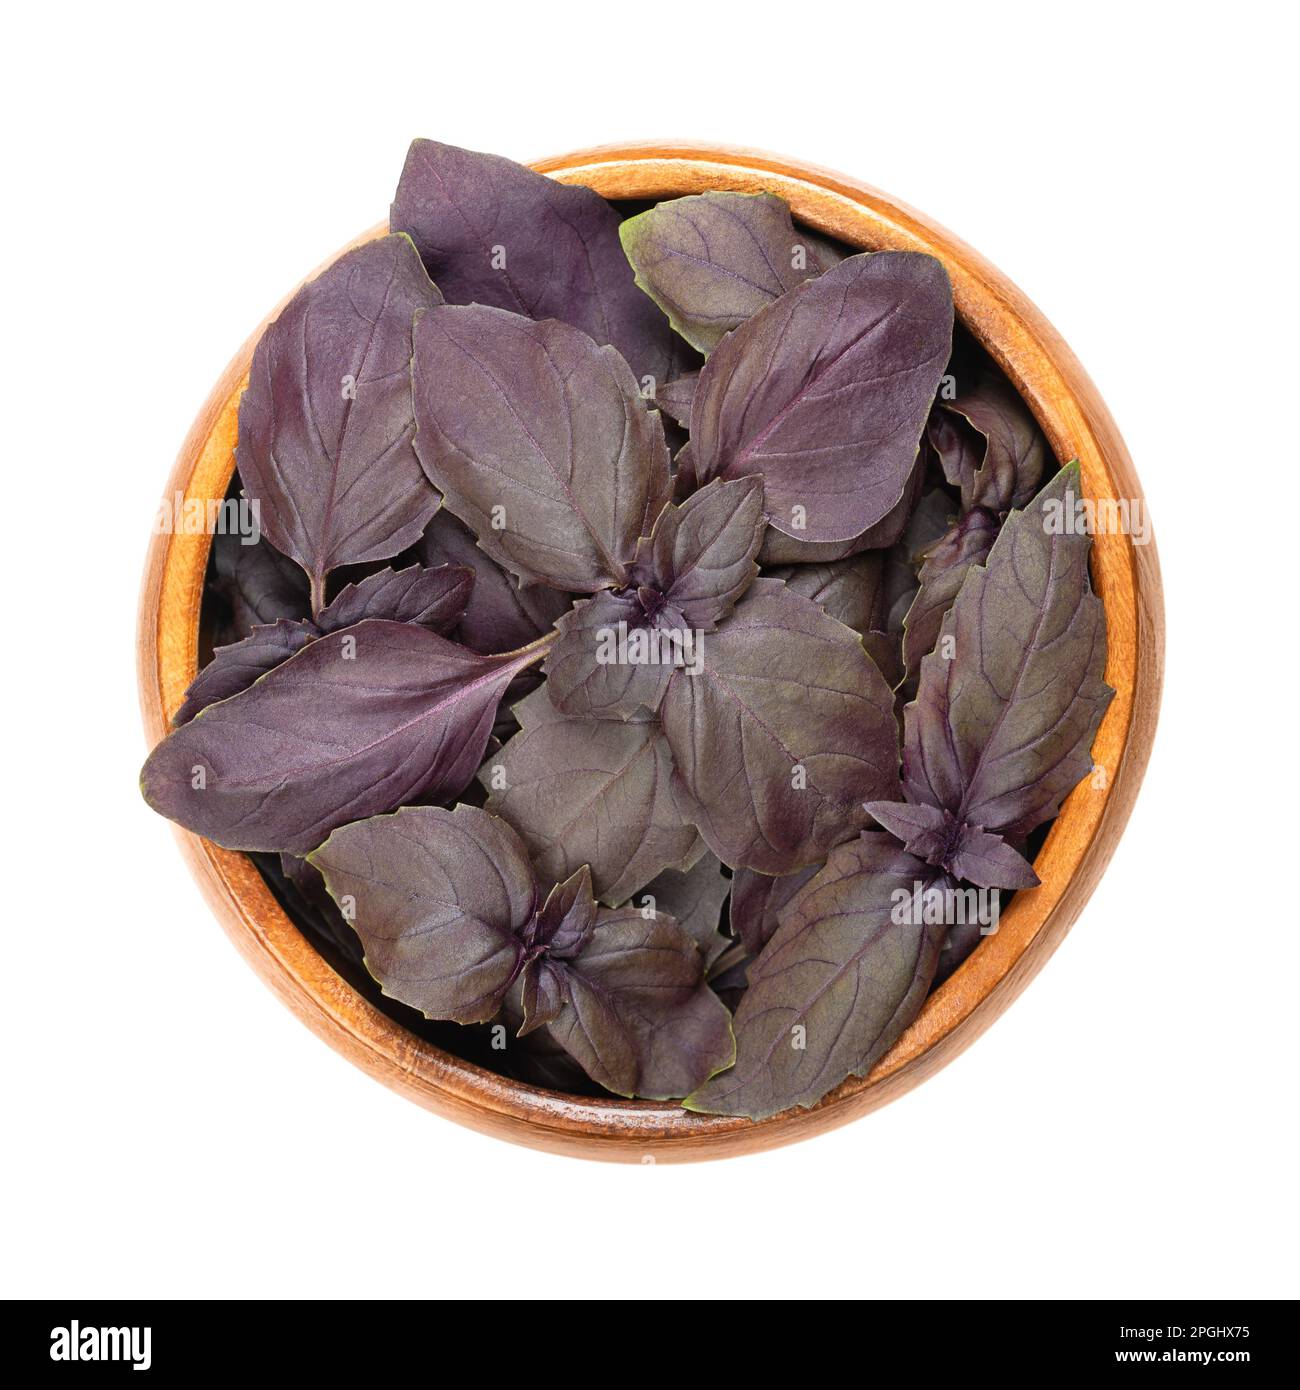 Feuilles de basilic roubin rouge, dans un bol en bois. Ocimum basilicum purpurascens frais, une variation de basilic doux, avec des feuilles roulades-pourpres inhabituelles. Banque D'Images